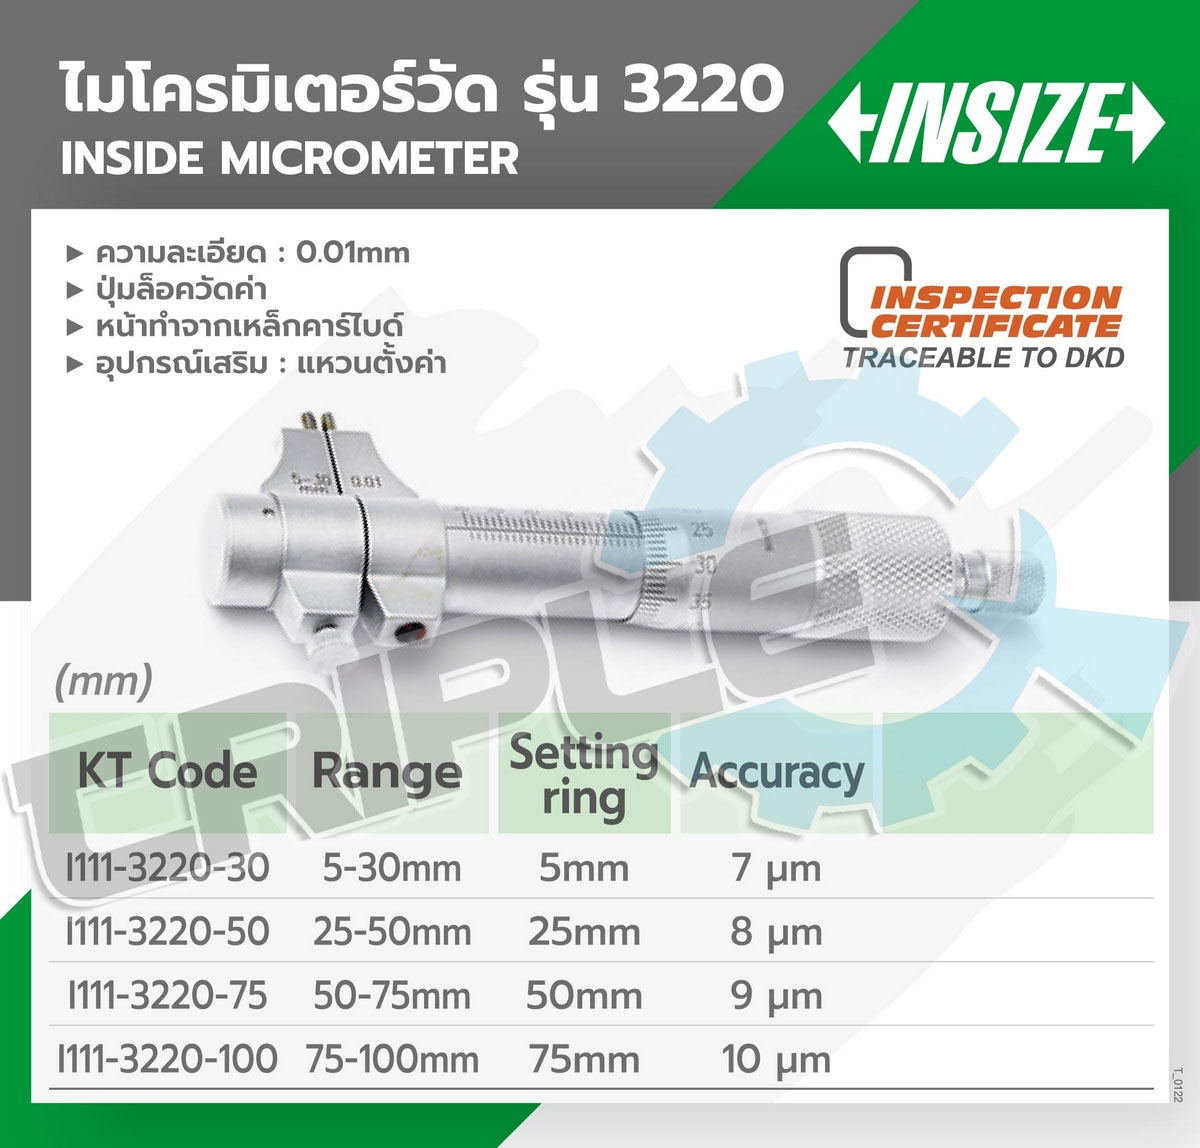 INSIZE - ไมโครมิเตอร์วัดรูใน รุ่น 3220-50 ขนาด 25-50 มม. ความละเอียดในการอ่าน 0.01 มม. ปากวัดงานเป็นคาร์ไบด์ ขนาดกะทัดรัด ใช้วัสดุด้วยเหล็กกล้า ไม่เป็นสนิม